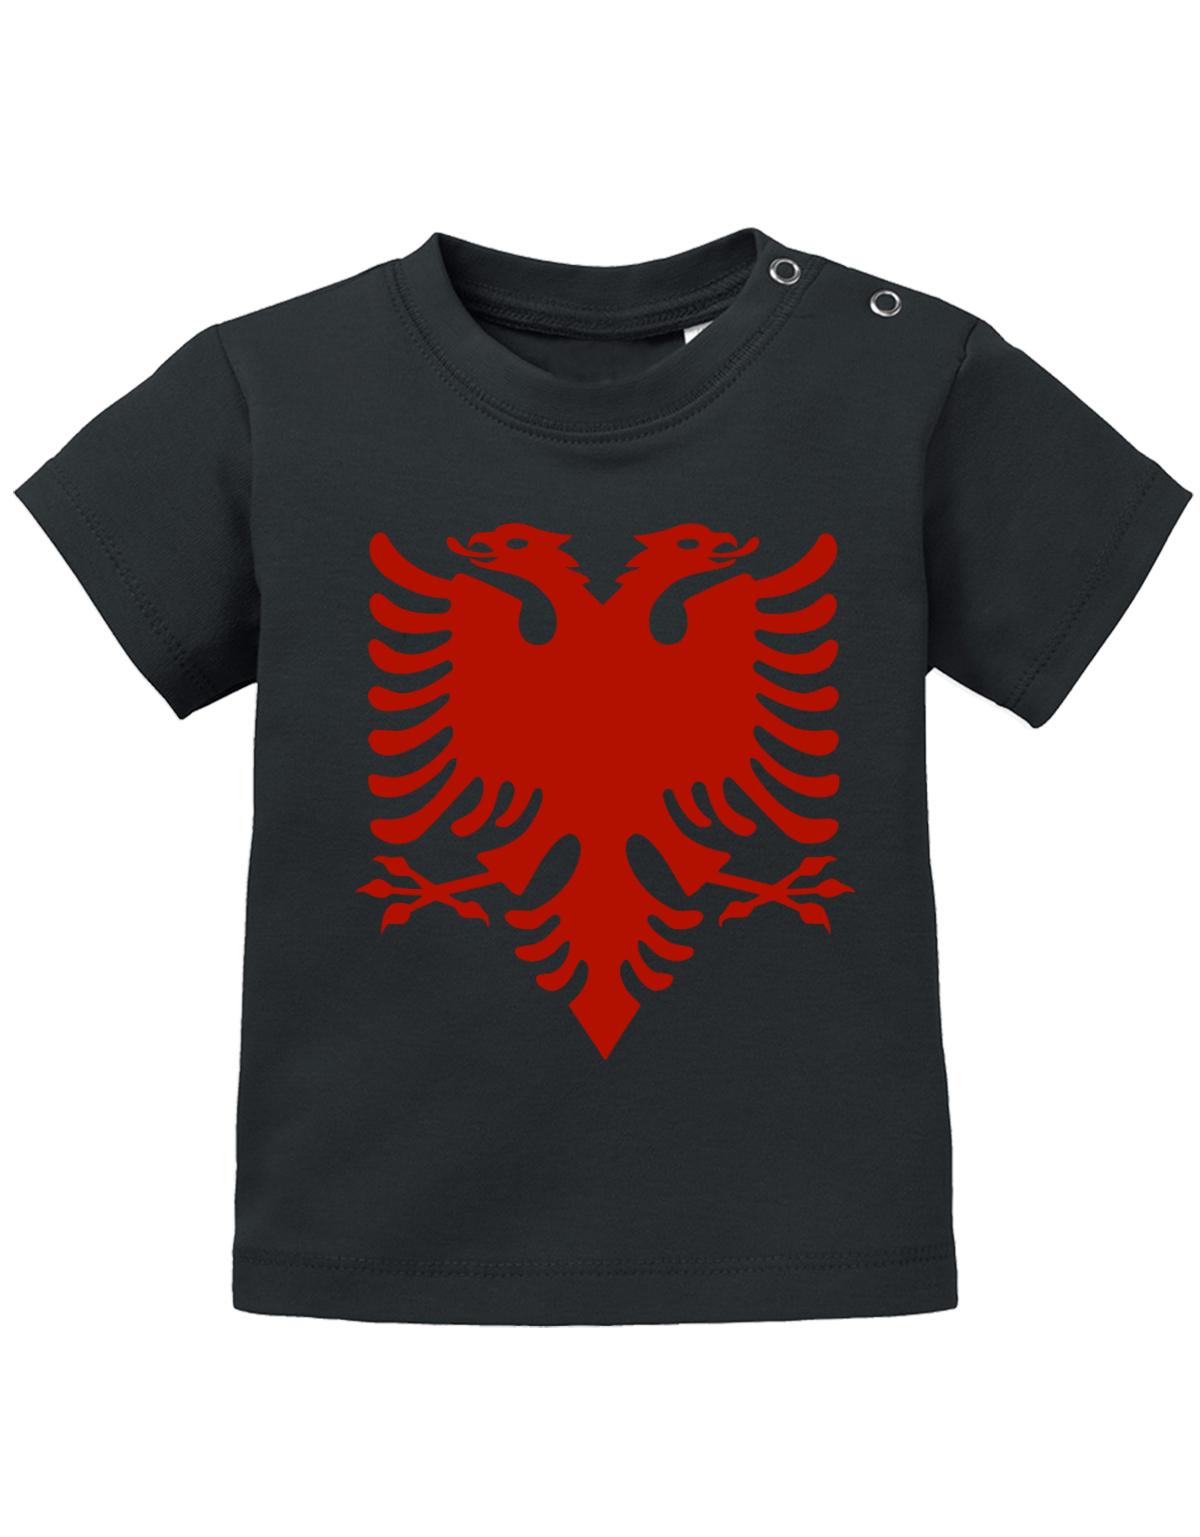 Albanien T Shirt für Junge und Mädchen. Albanische Flagge Design. Schwarz